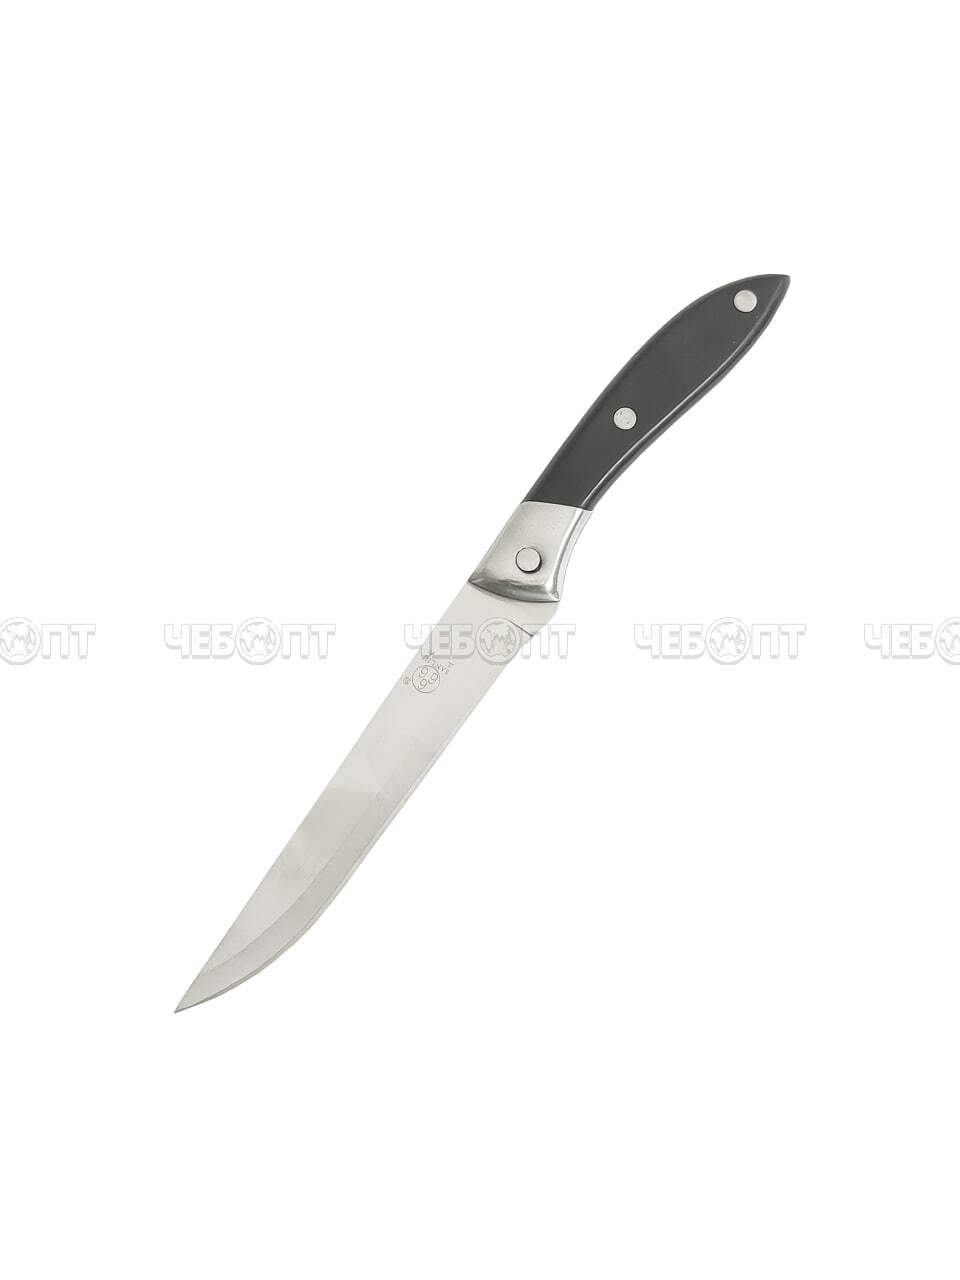 Нож кухонный универсальный 11 см 666 из нержавеющей стали с пластиковой ручкой арт. 26001 $ [250] GOODSEE. ЧЕБОПТ.